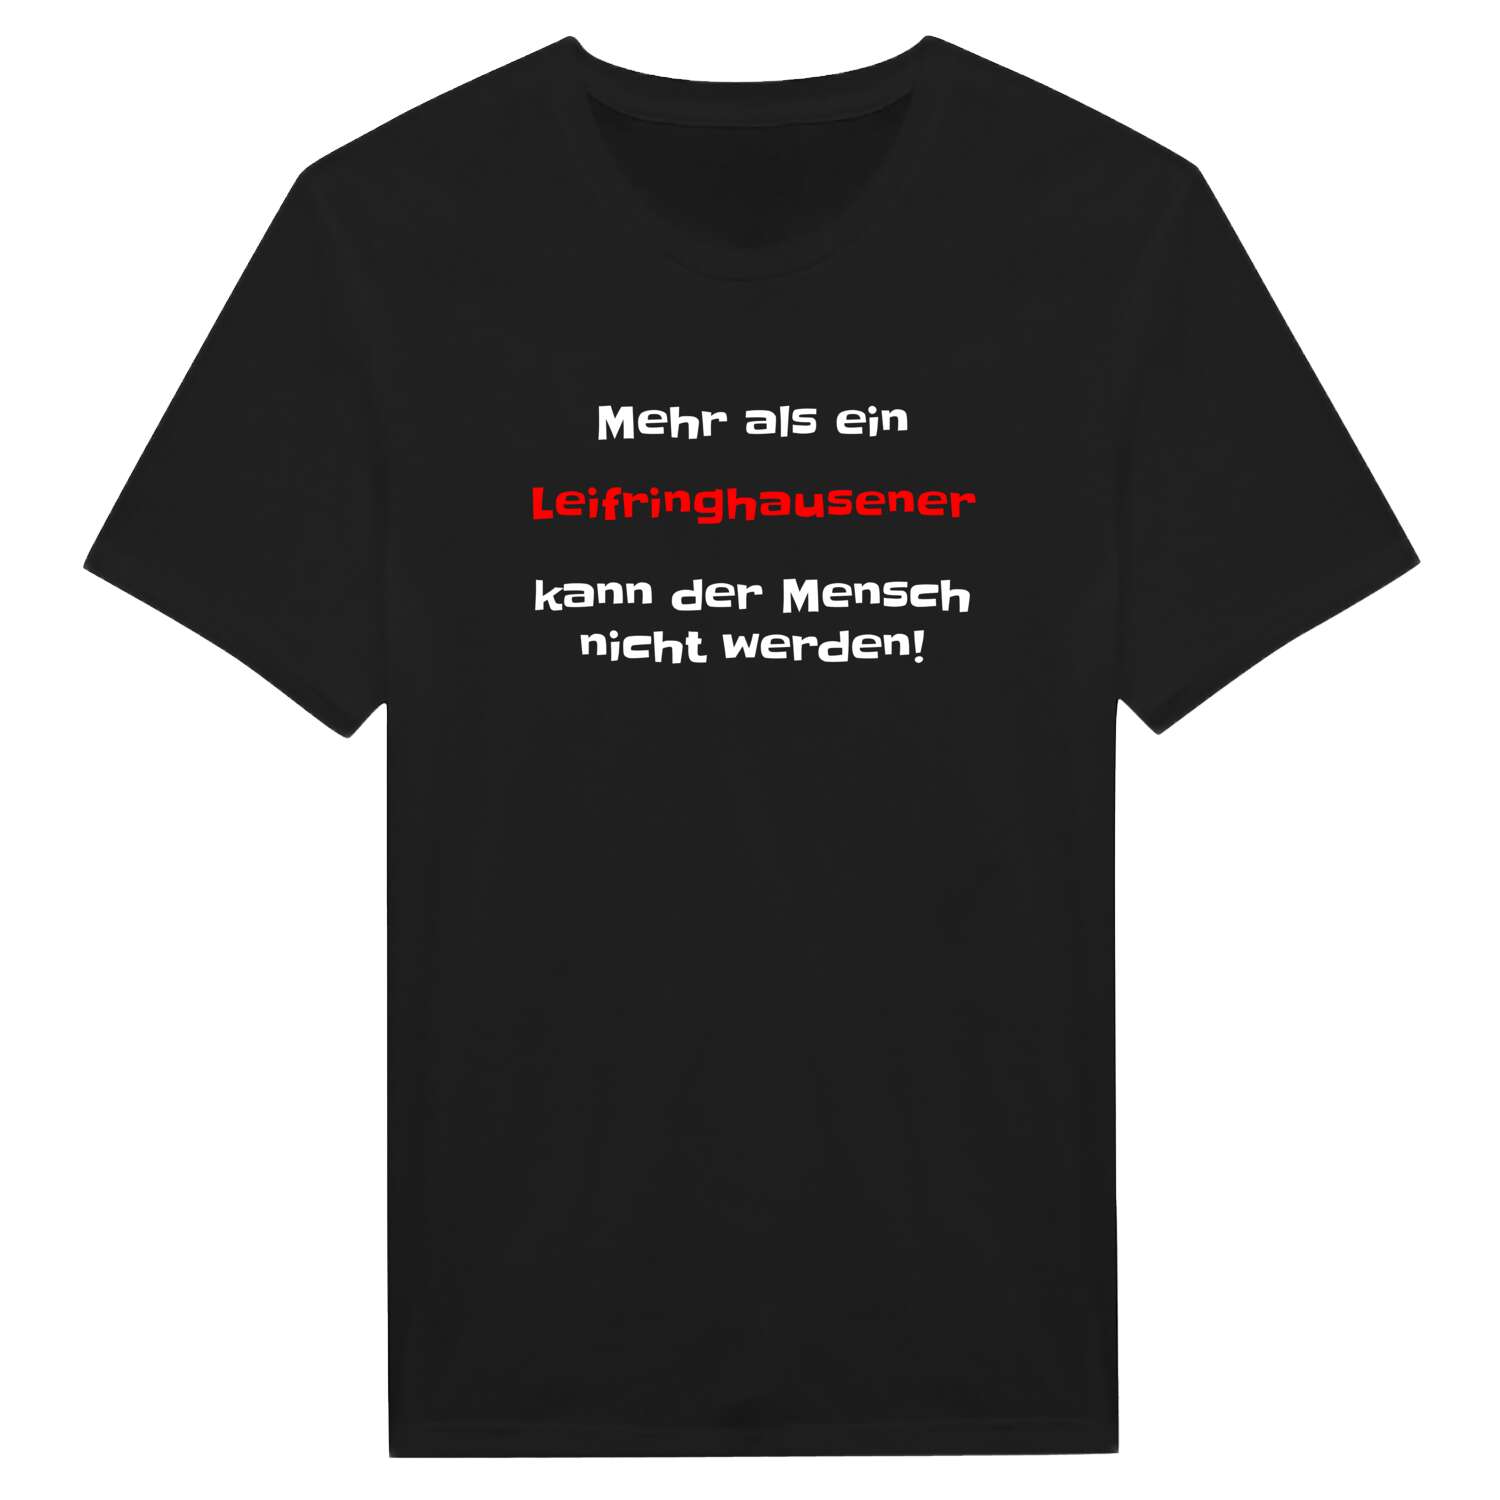 Leifringhausen T-Shirt »Mehr als ein«